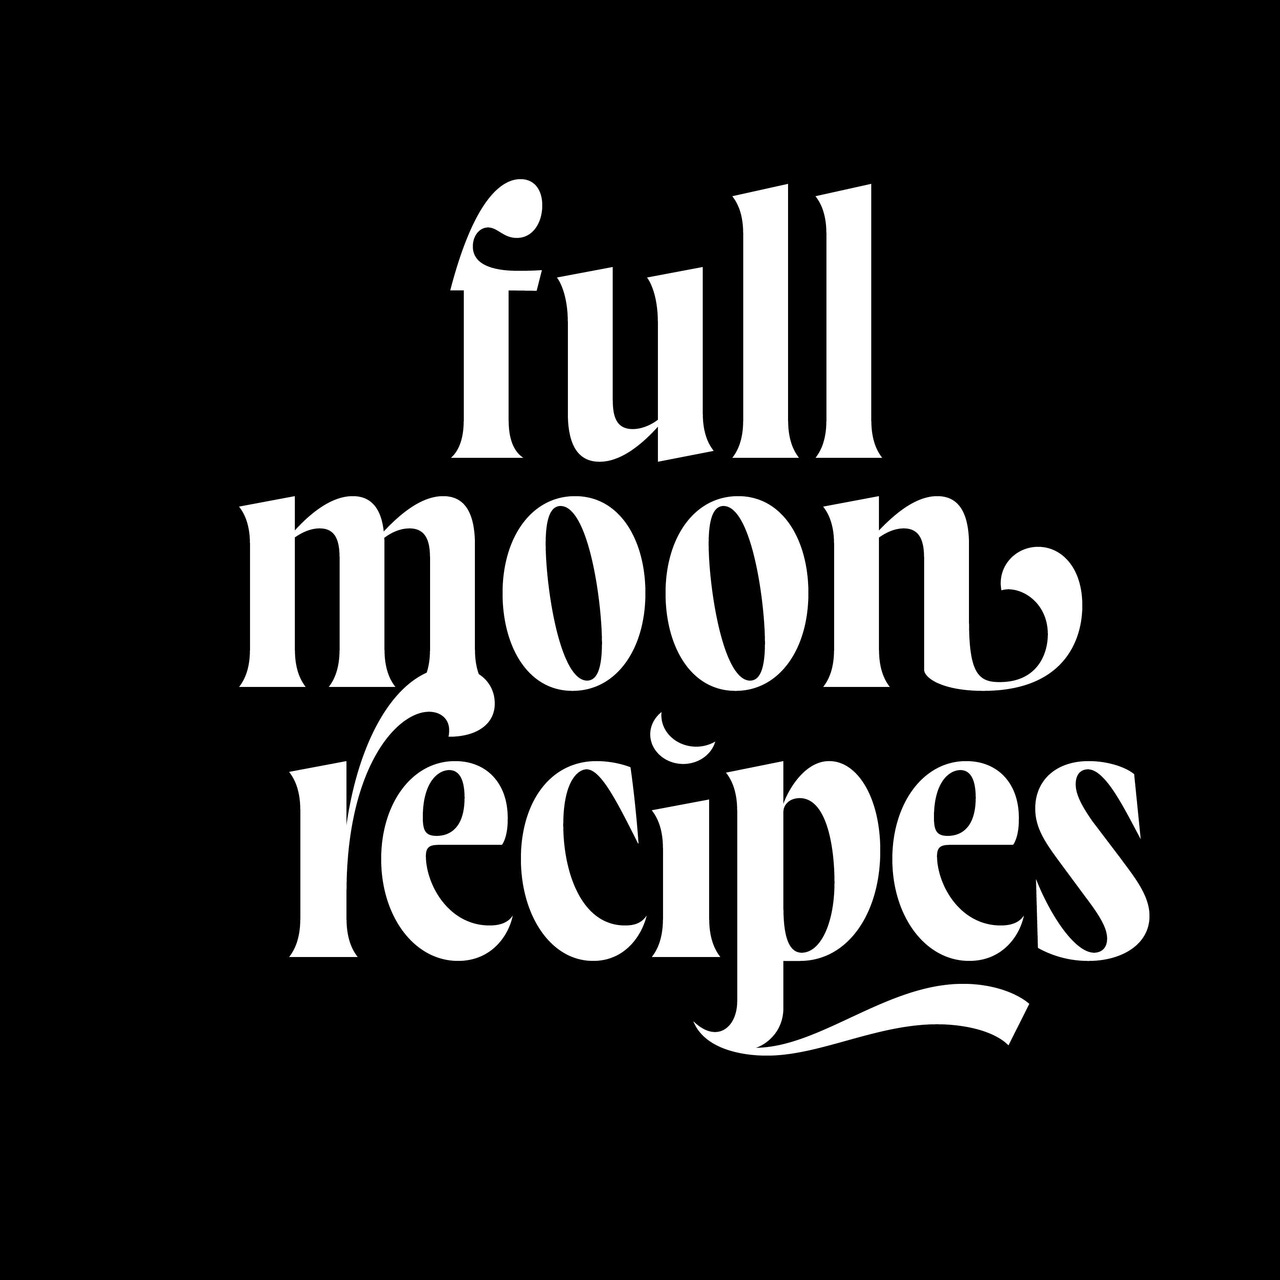 Artwork for Full Moon Recipes